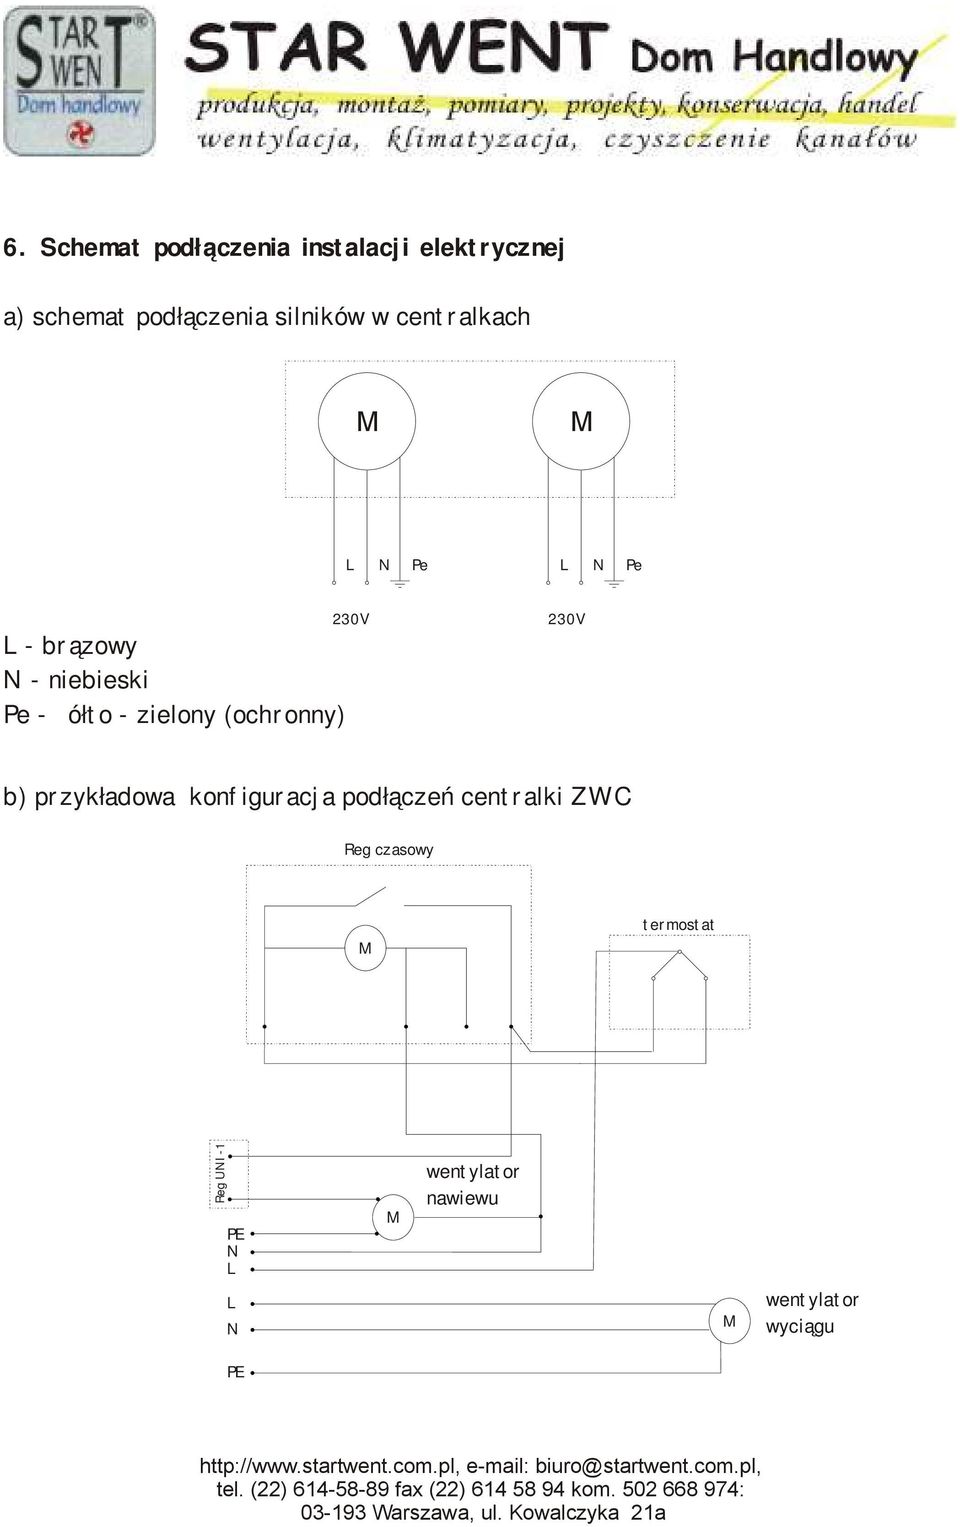 (ochronny) 230V 230V b) przykładowa konfiguracja podłączeń centralki ZWC Reg